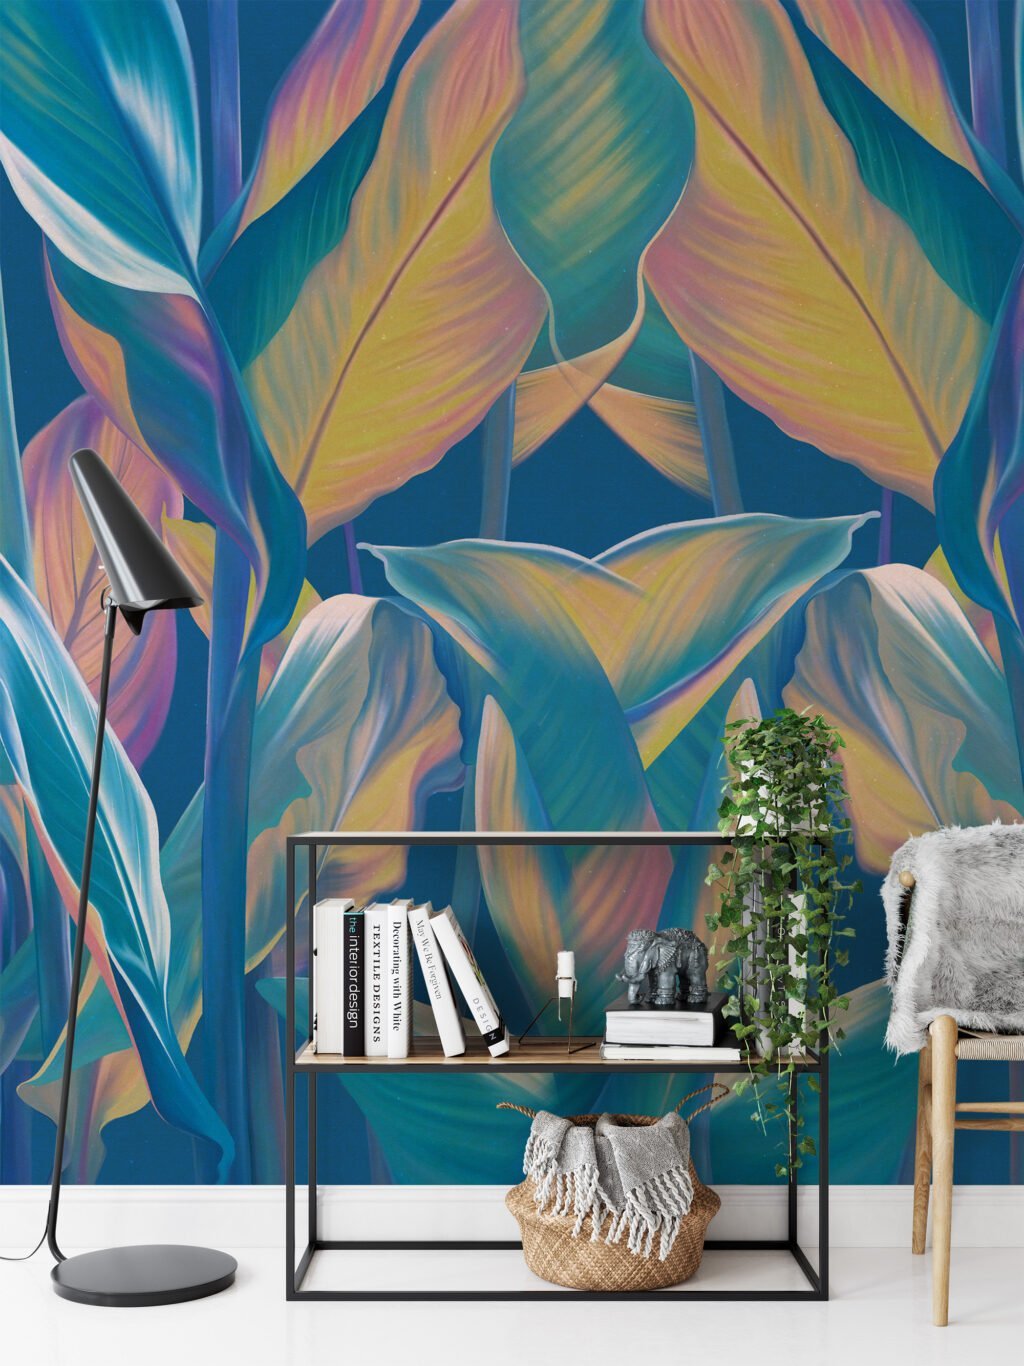 Mavi Tonlu Tropikal Yapraklar Desenli Duvar Kağıdı, Sakin Bir Atmosfer İçin Renkli Yapraklı 3D Duvar Kağıdı Yaprak Desenli Duvar Kağıtları 5